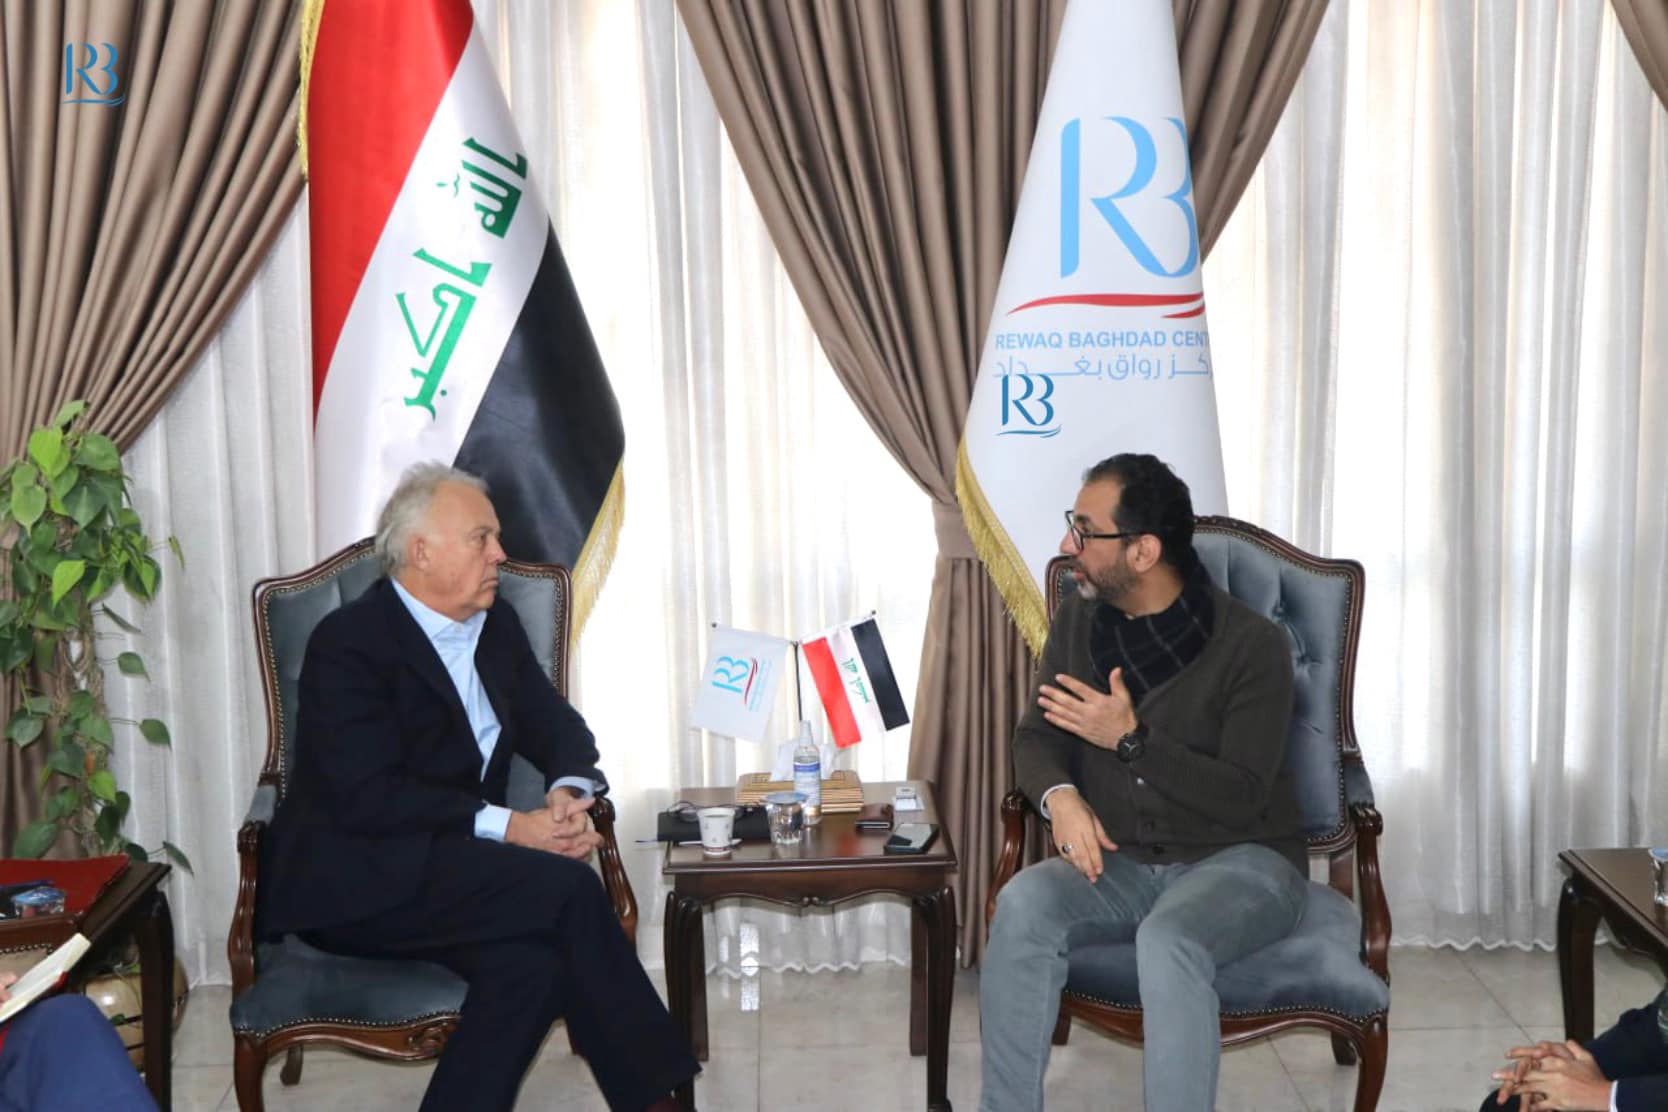 إستقبل رئيس مركز رواق بغداد للسياسات العامة الاستاذ عباس العنبوري السيد مايكل كيتنغ  المدير التنفيذي للمعهد الاوروبي للسلام EIB